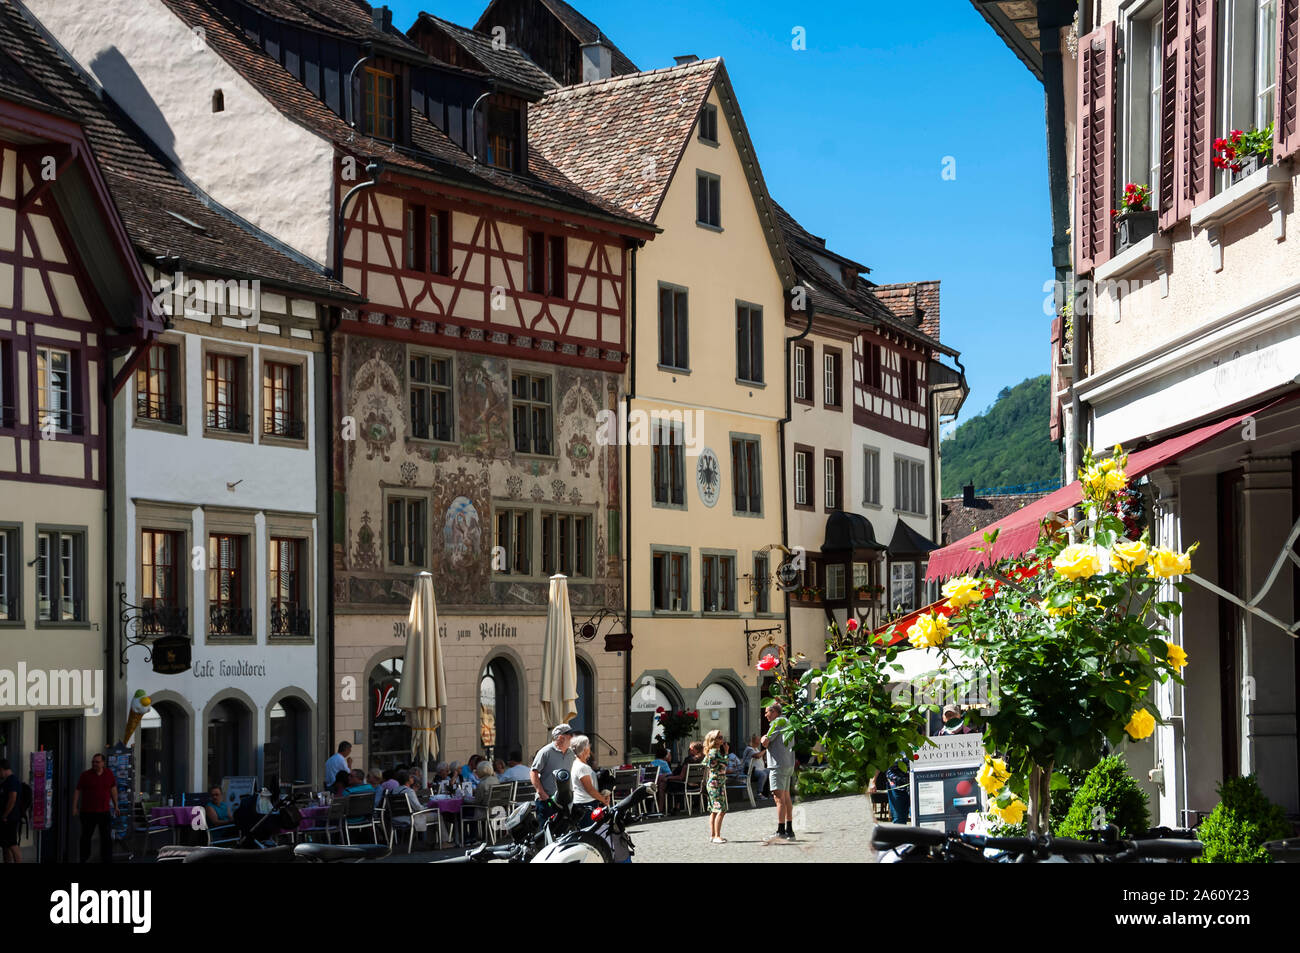 Traditional architecture, Street scene, Stein am Rhein, Canton of Schaffhausen, Switzerland, Europe Stock Photo